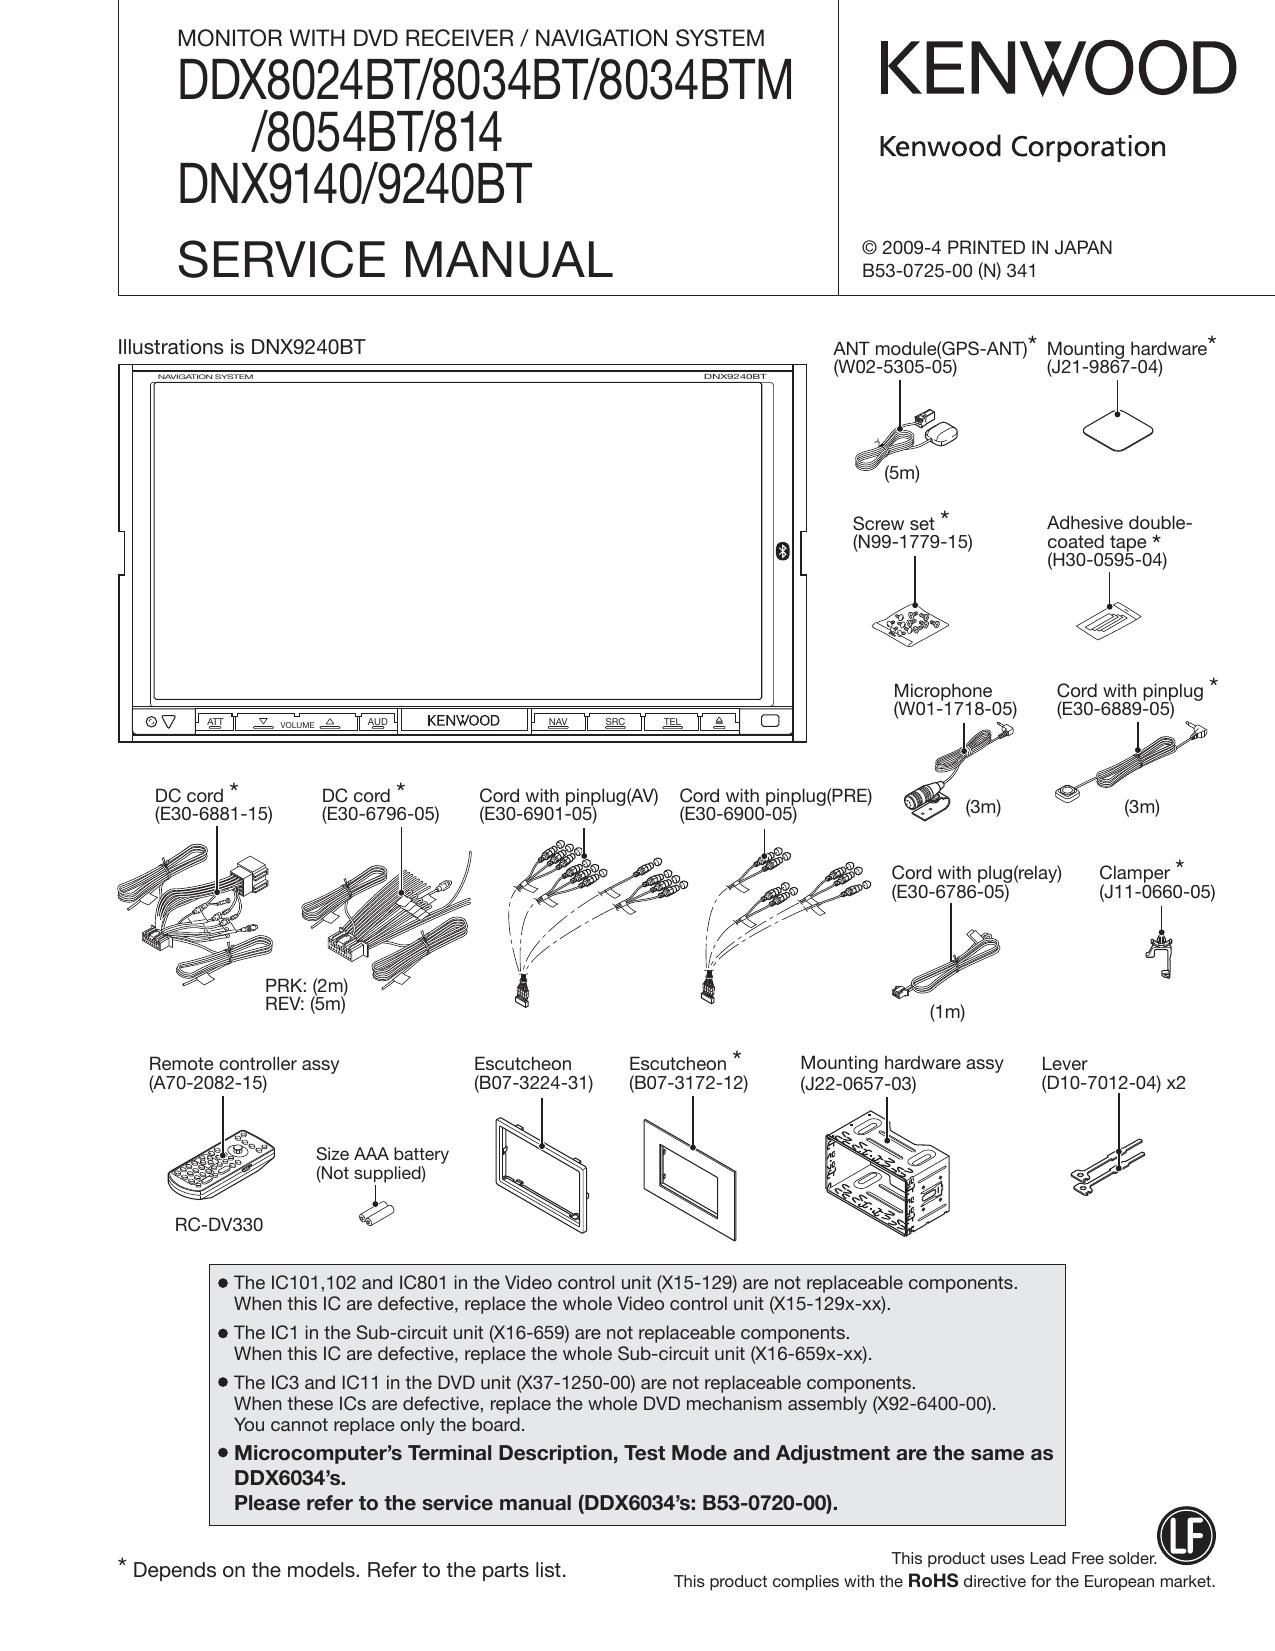 Kenwood DDX 8054 BT Service Manual